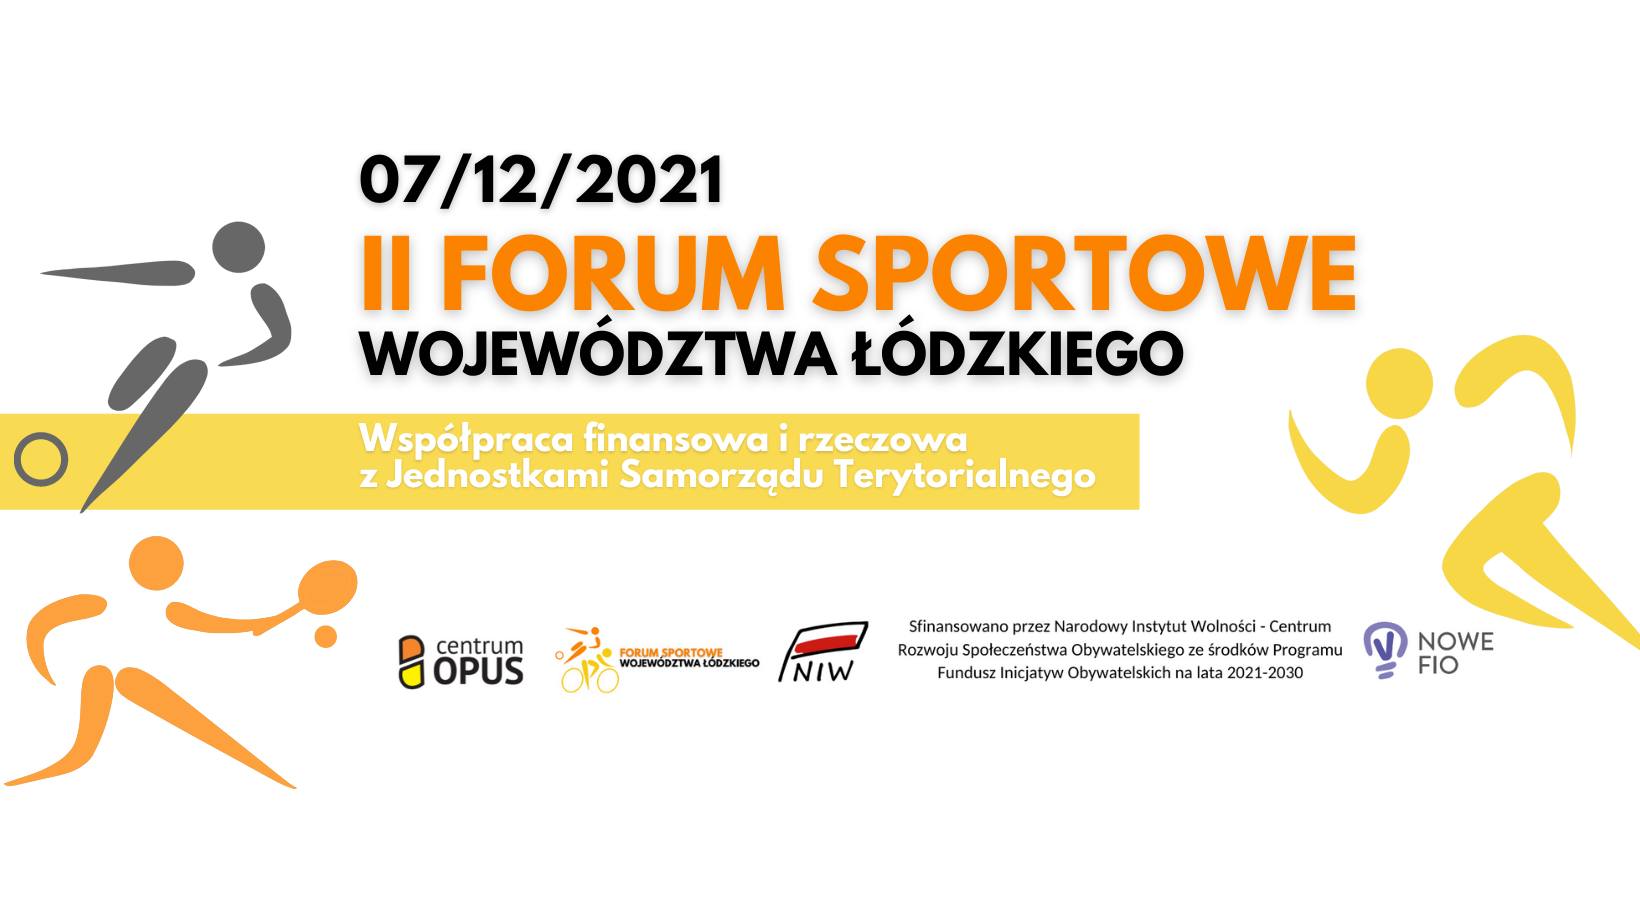 Grafika przedstawia informację na temat II Forum Sportowego Wojewodztwa Łódzkiego, które odbędzie się 7 grudnia.